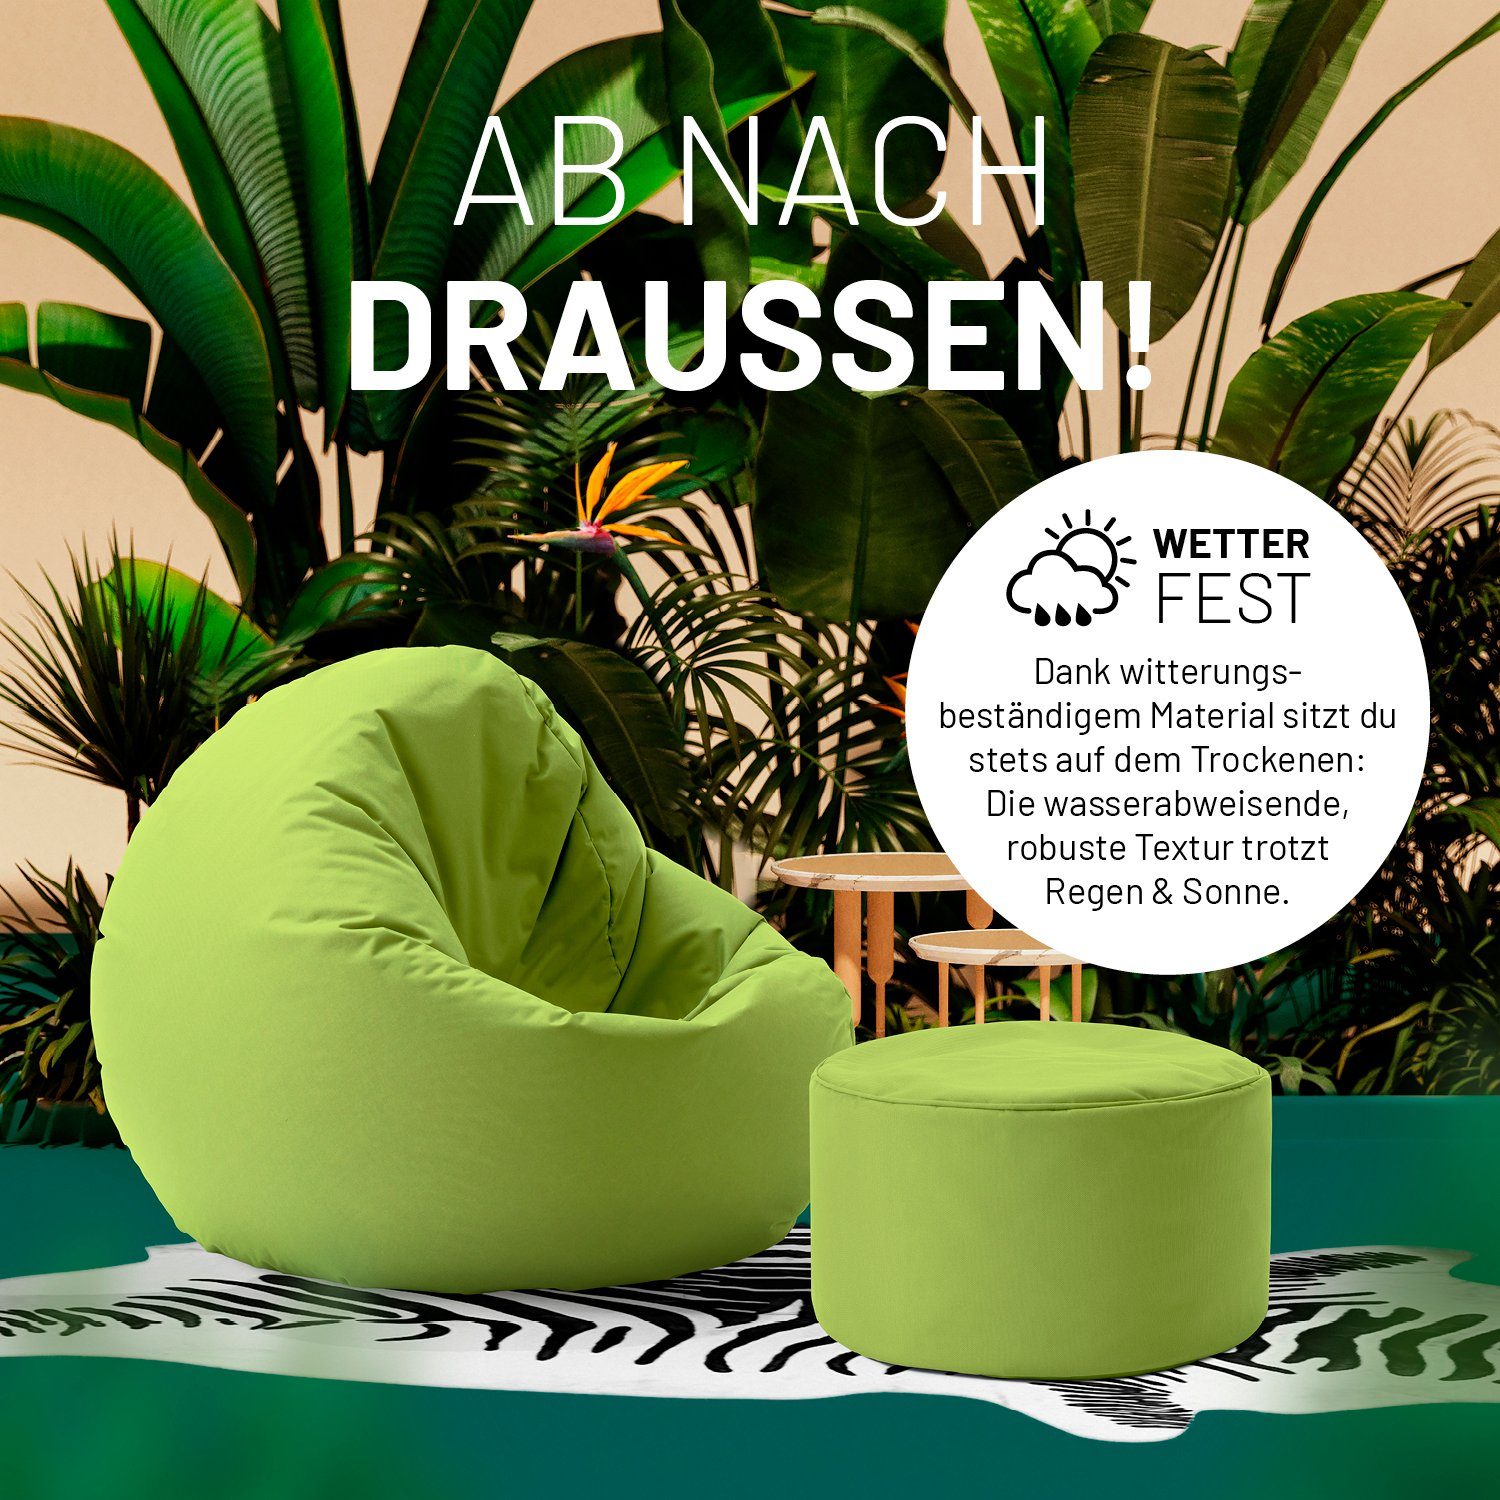 grün 50L Hocker, Outdoor, Fußsack Sitzsack kompakt Pouf 25x45cm Tisch, Garantie 5 in- & & Lumaland Jahre